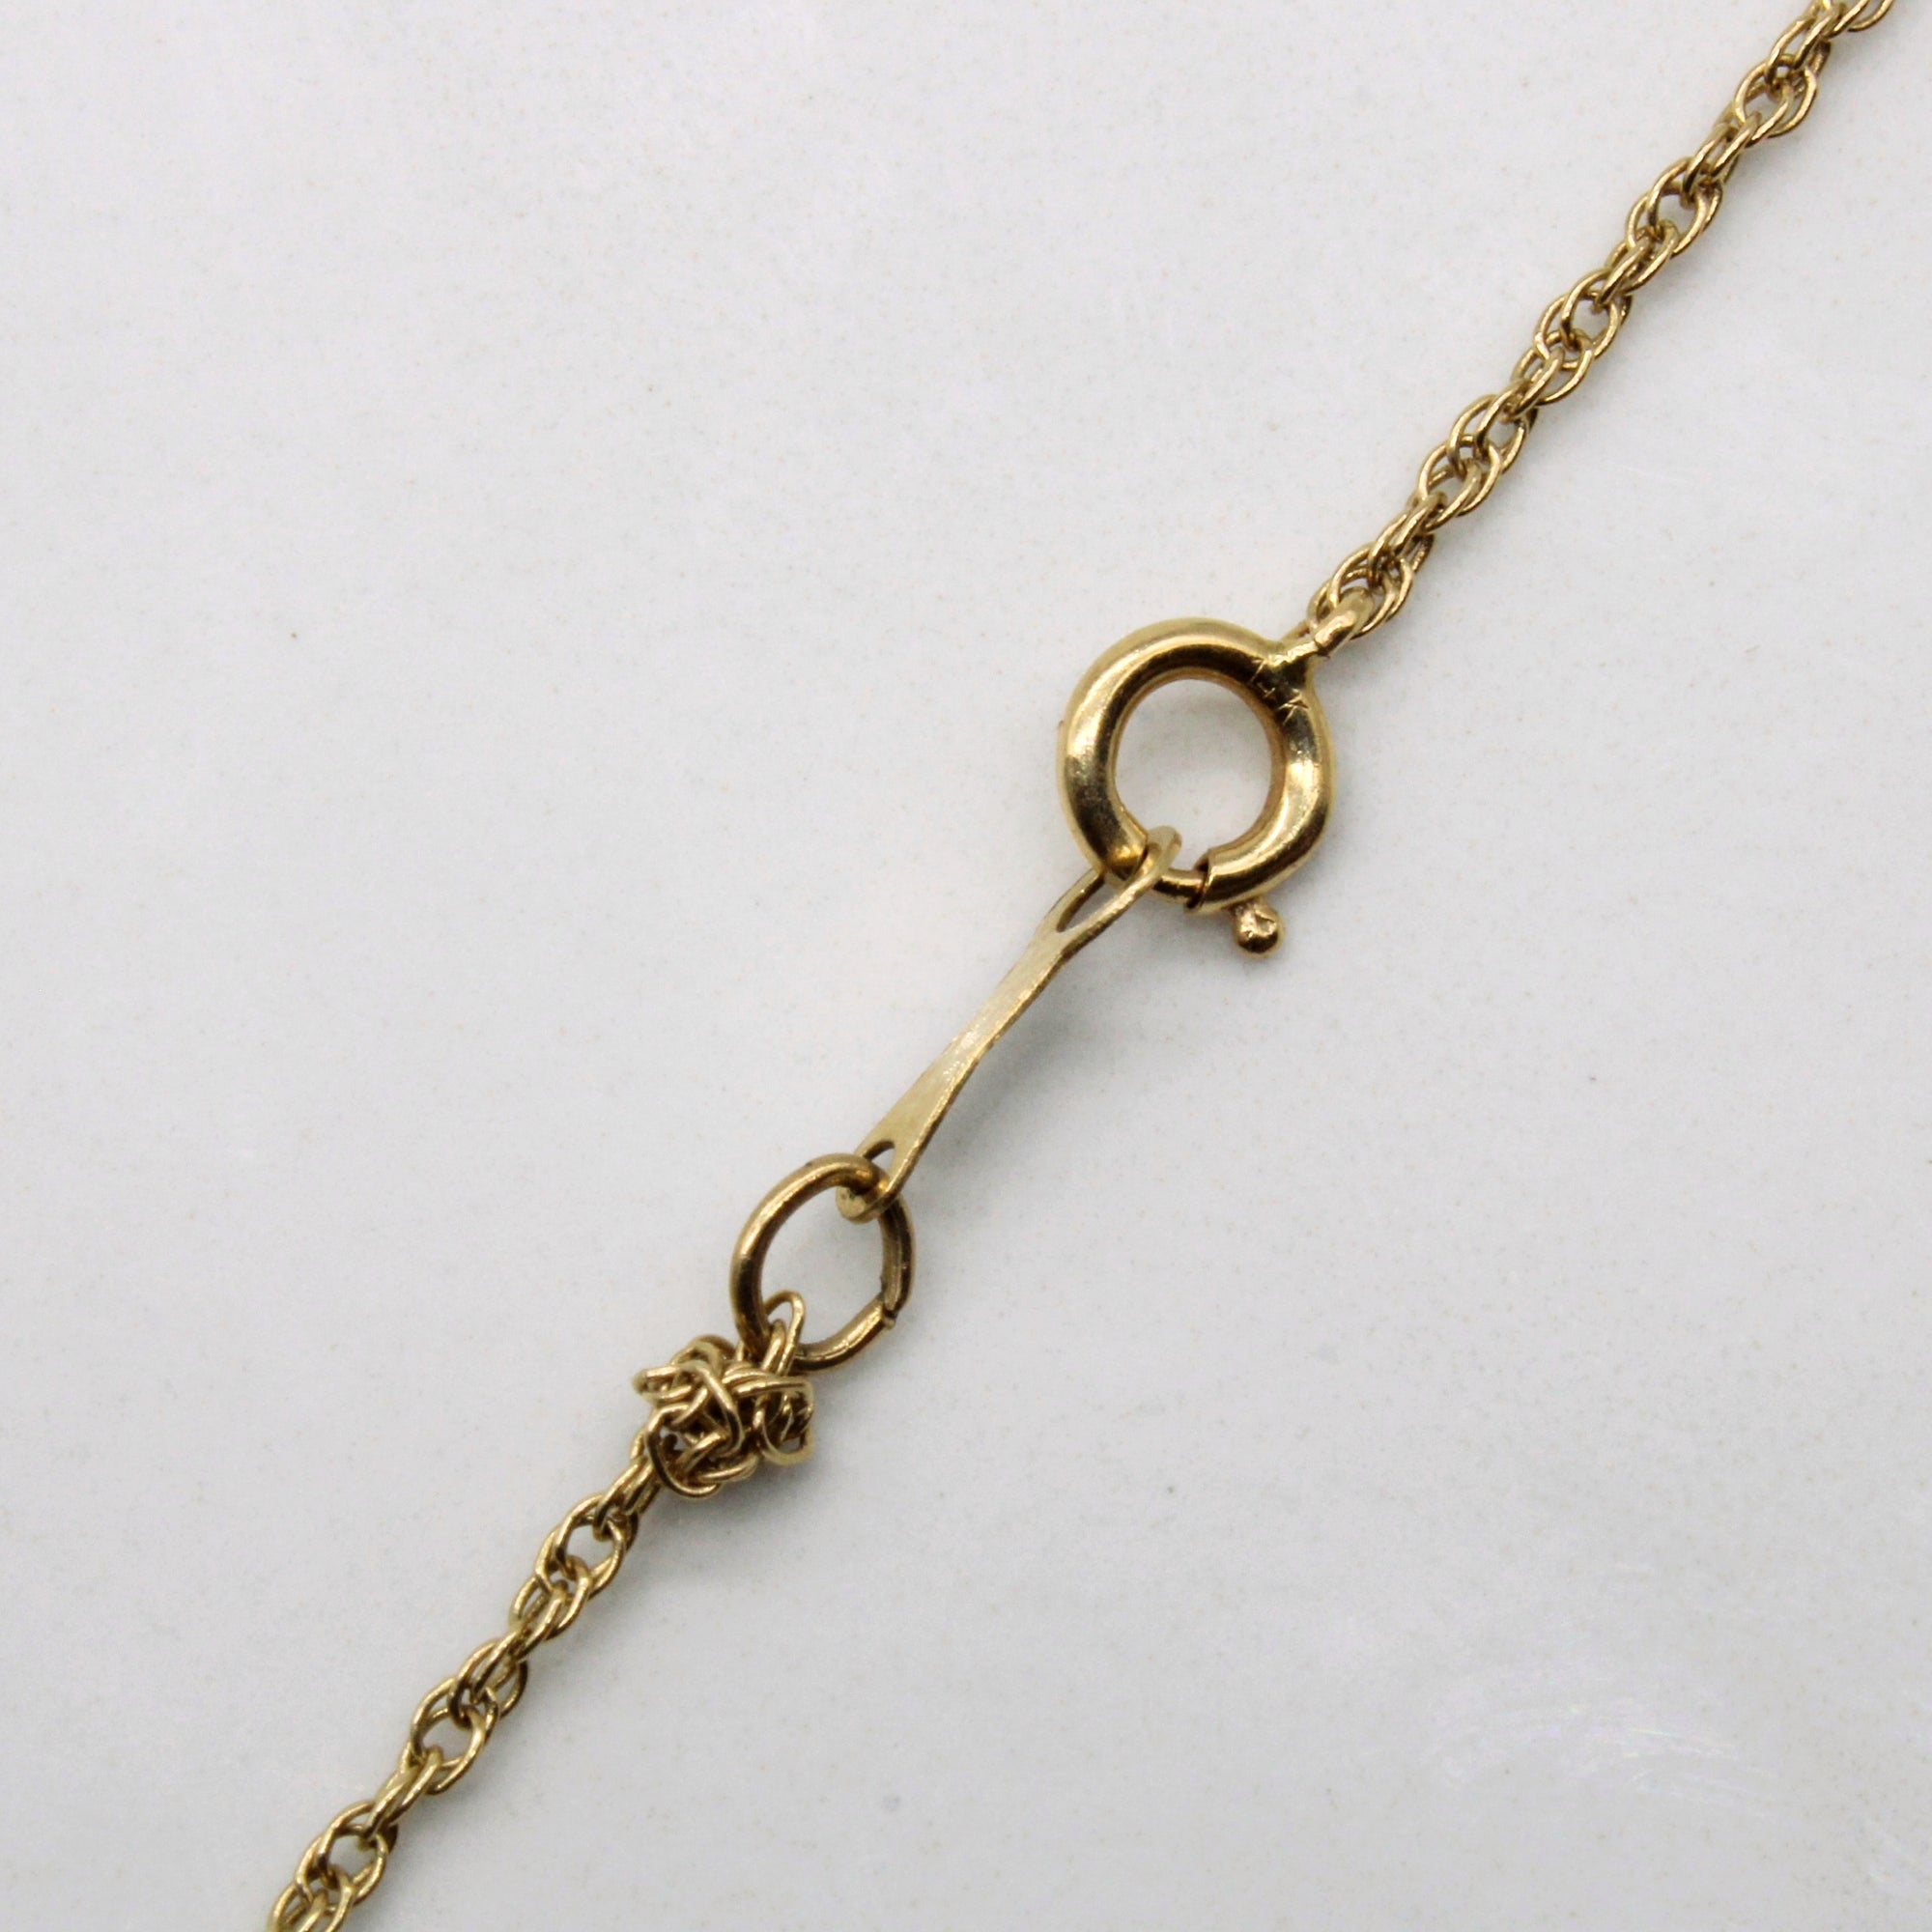 14k Yellow Gold Rope Chain | 16